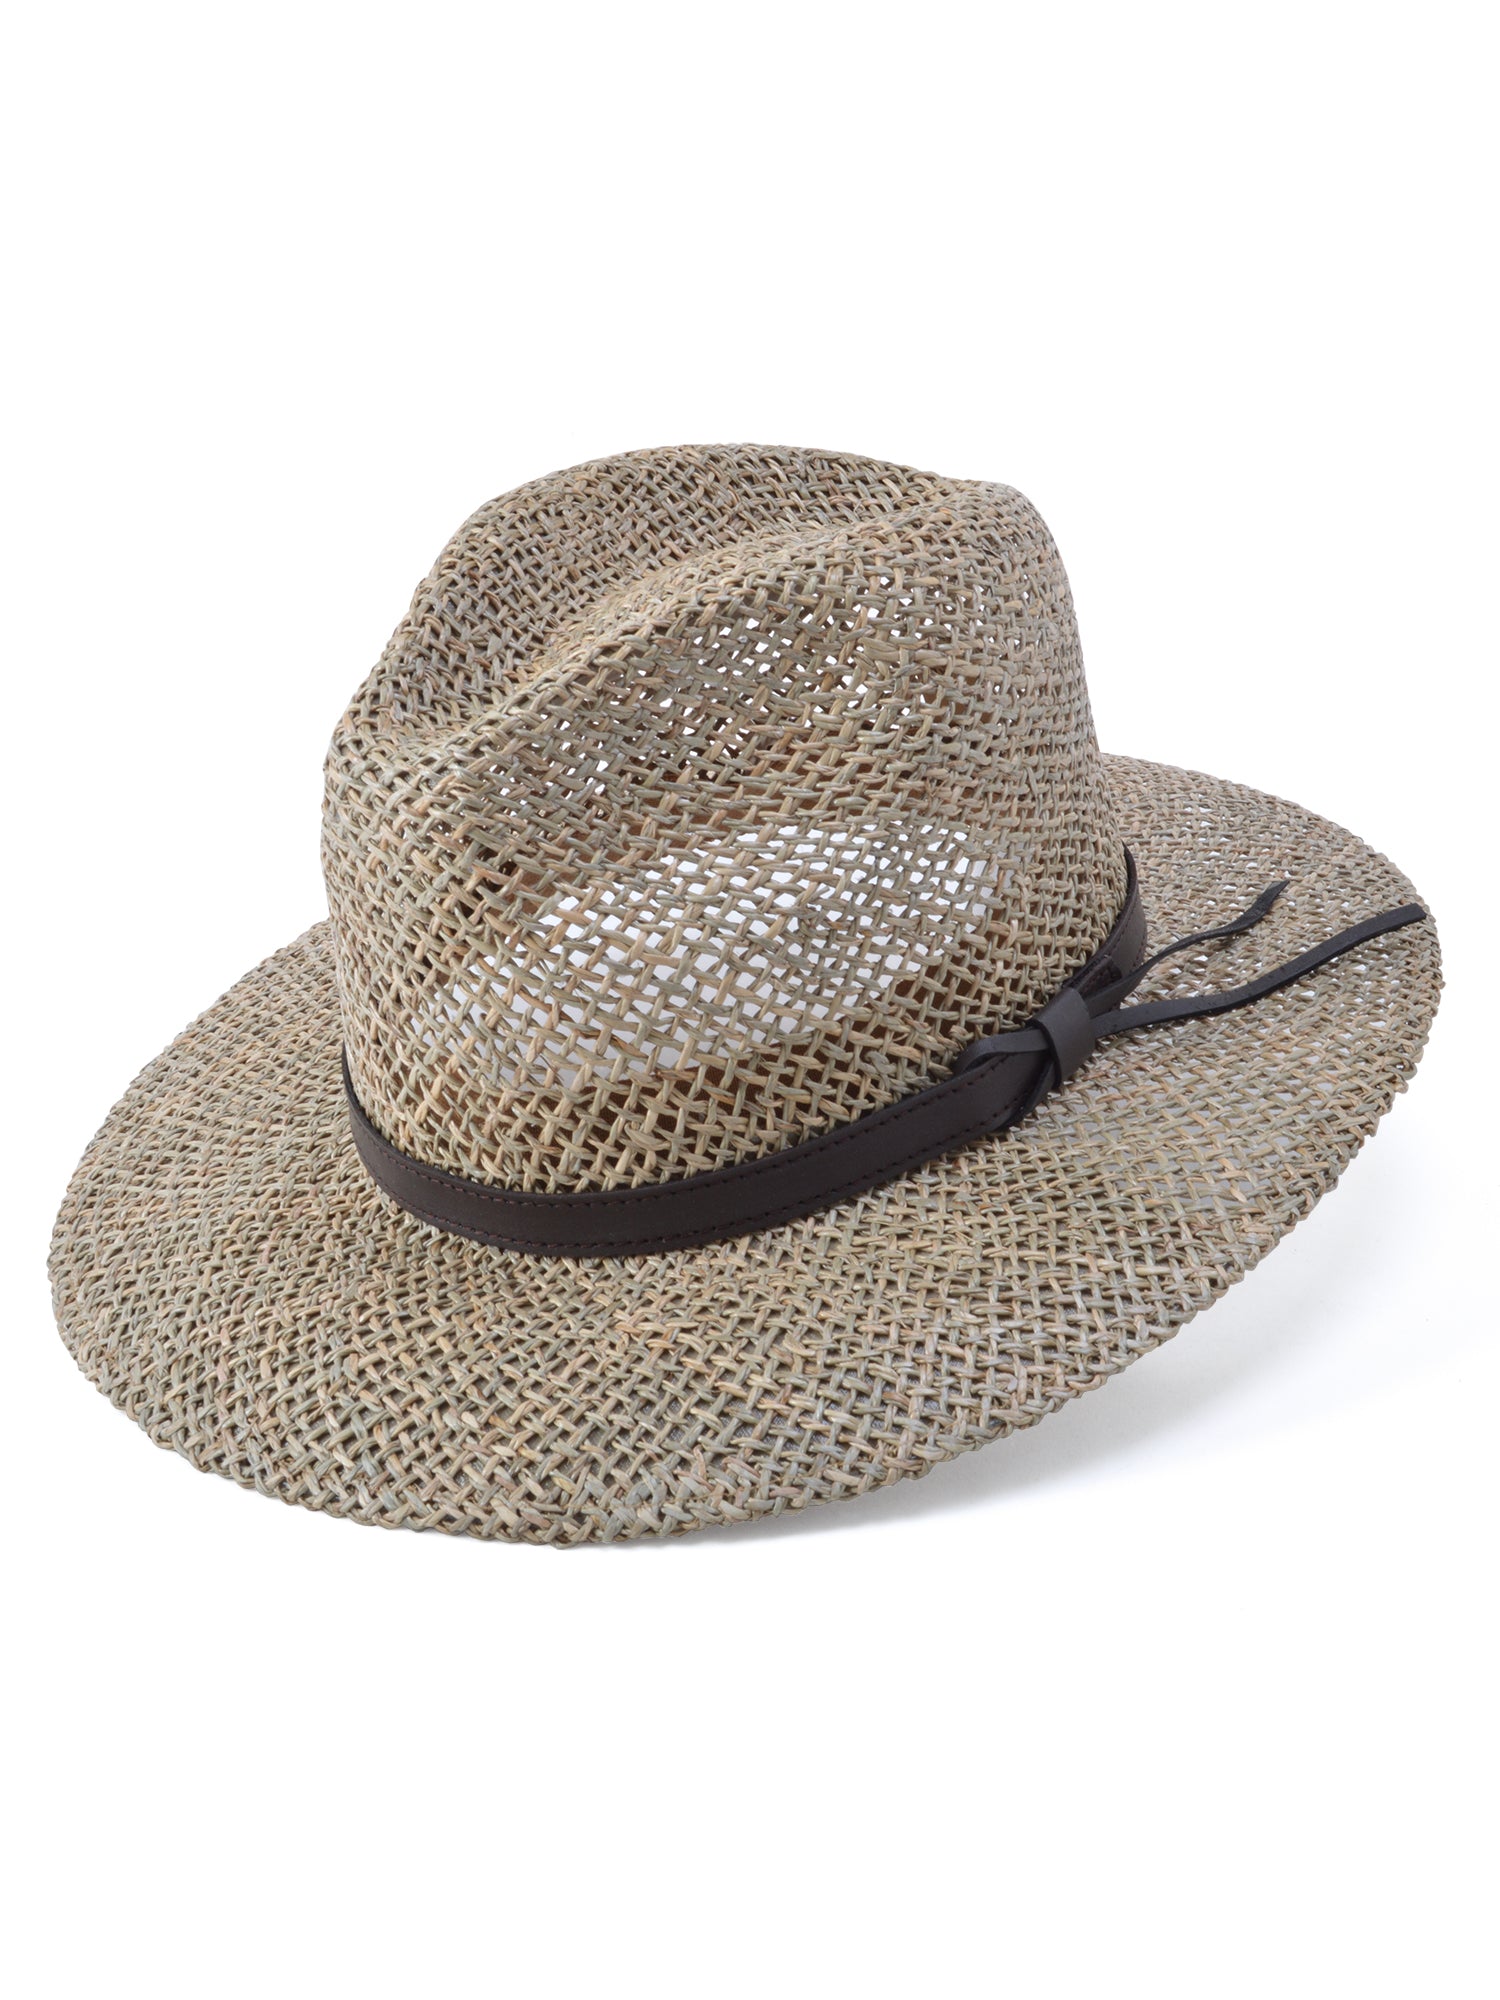 Stetson Baytown Seagrass Straw Hat